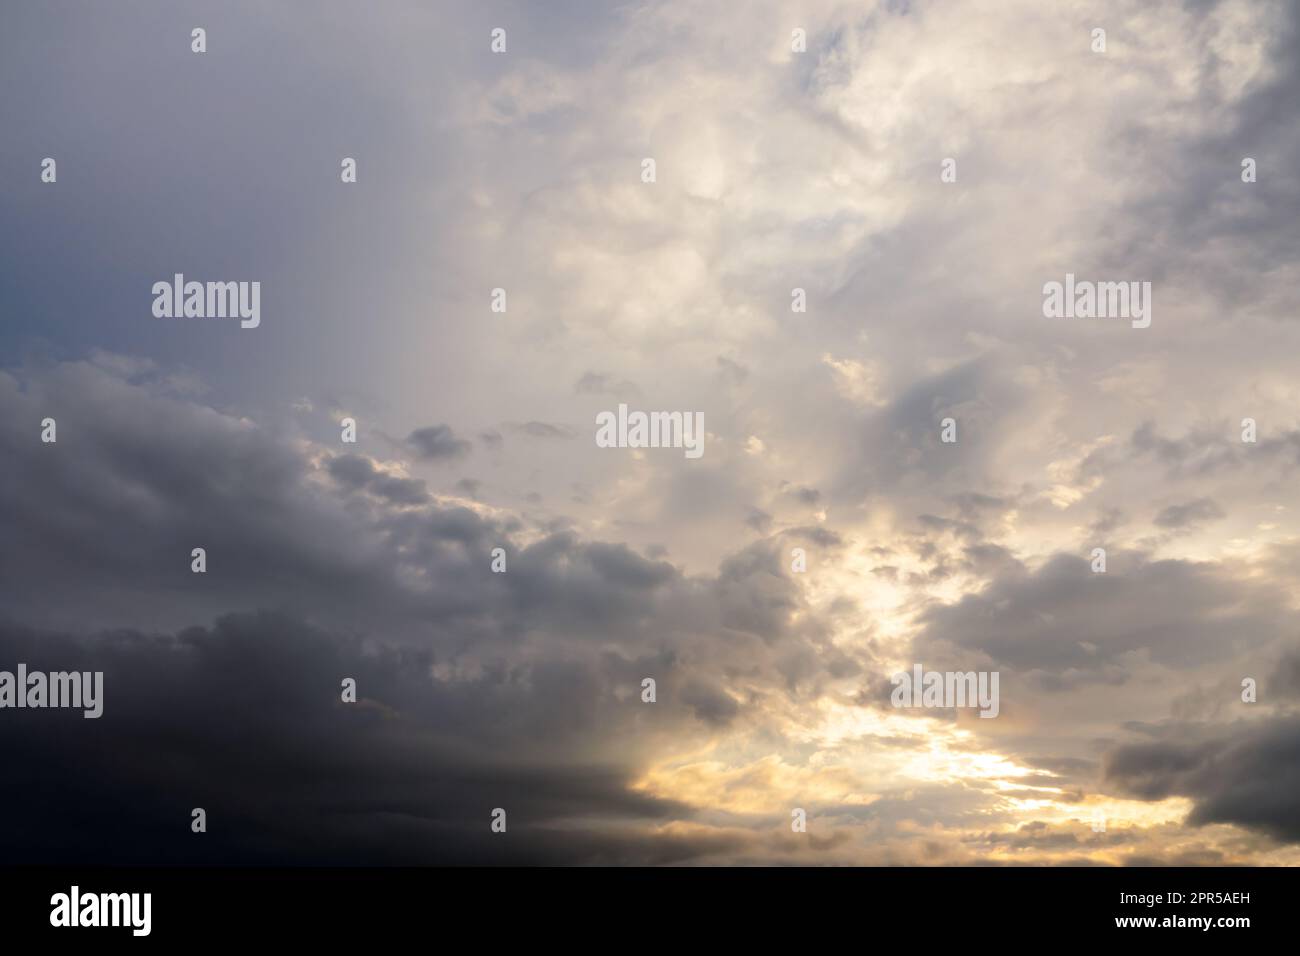 Schöner launischer Himmel mit dunklen Wolken bei Sonnenuntergang, Himmelserstellung, Naturhintergrund Stockfoto